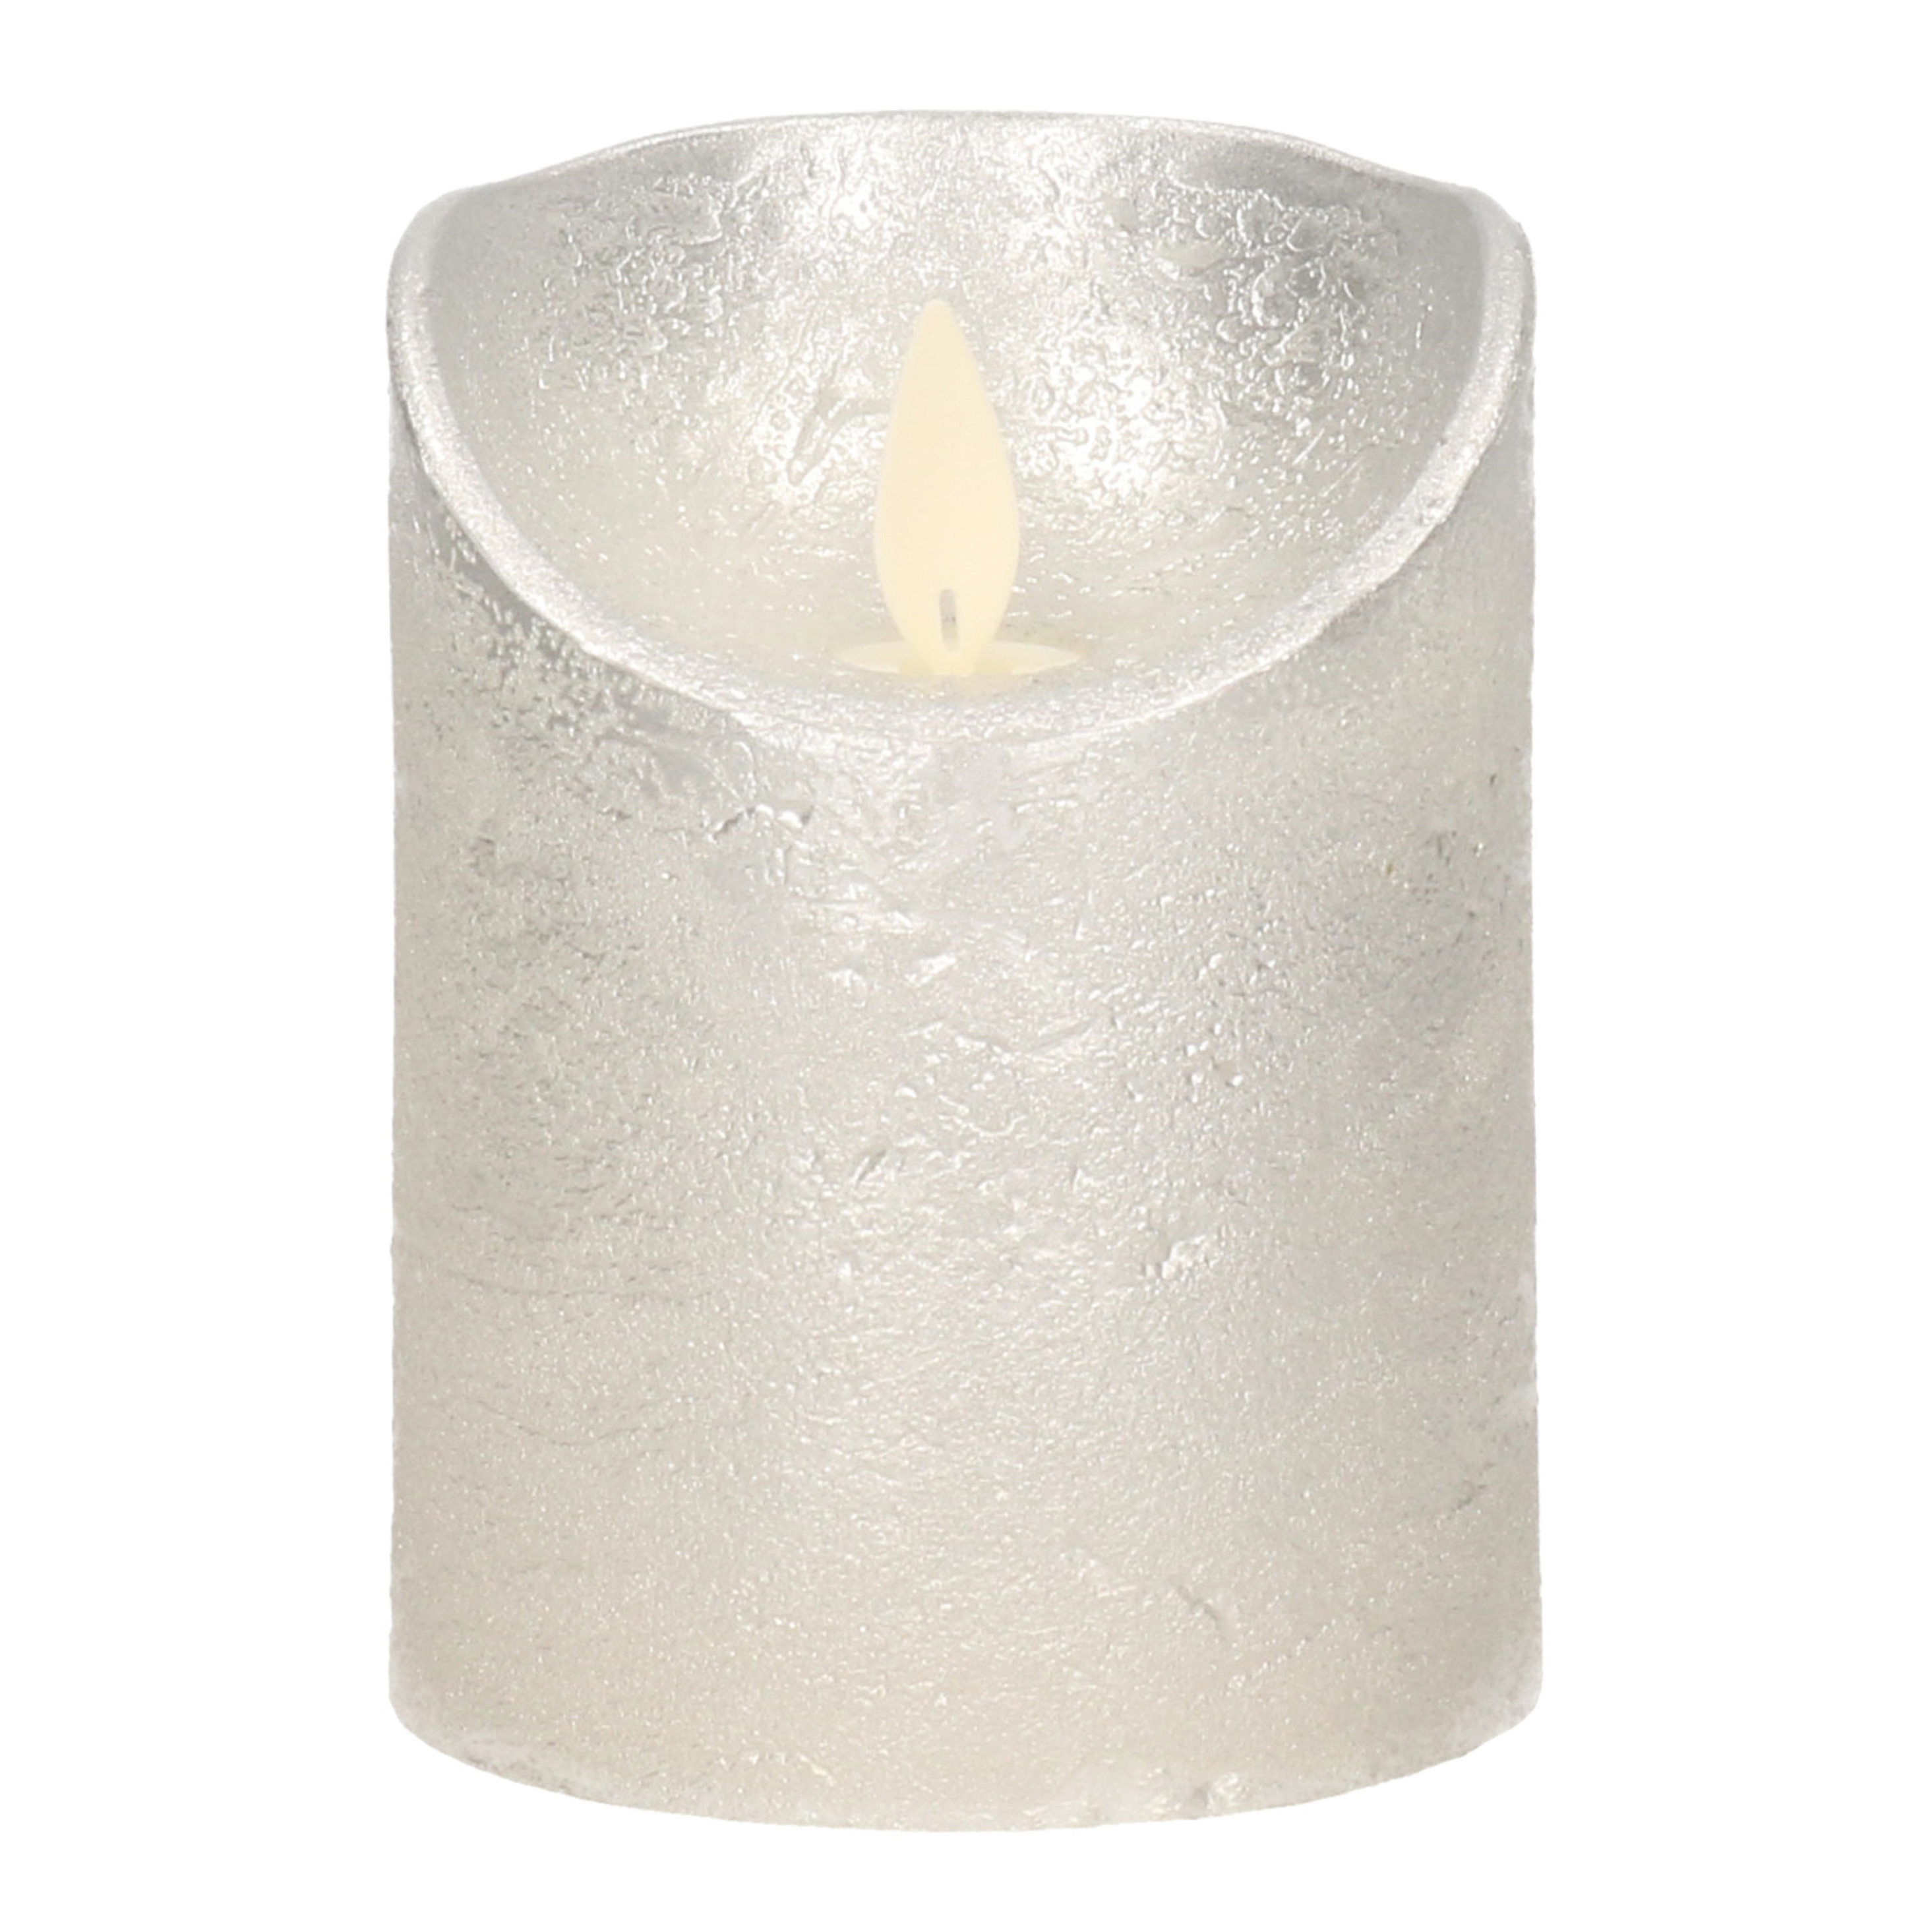 1x Zilveren LED kaarsen-stompkaarsen met bewegende vlam 10 cm